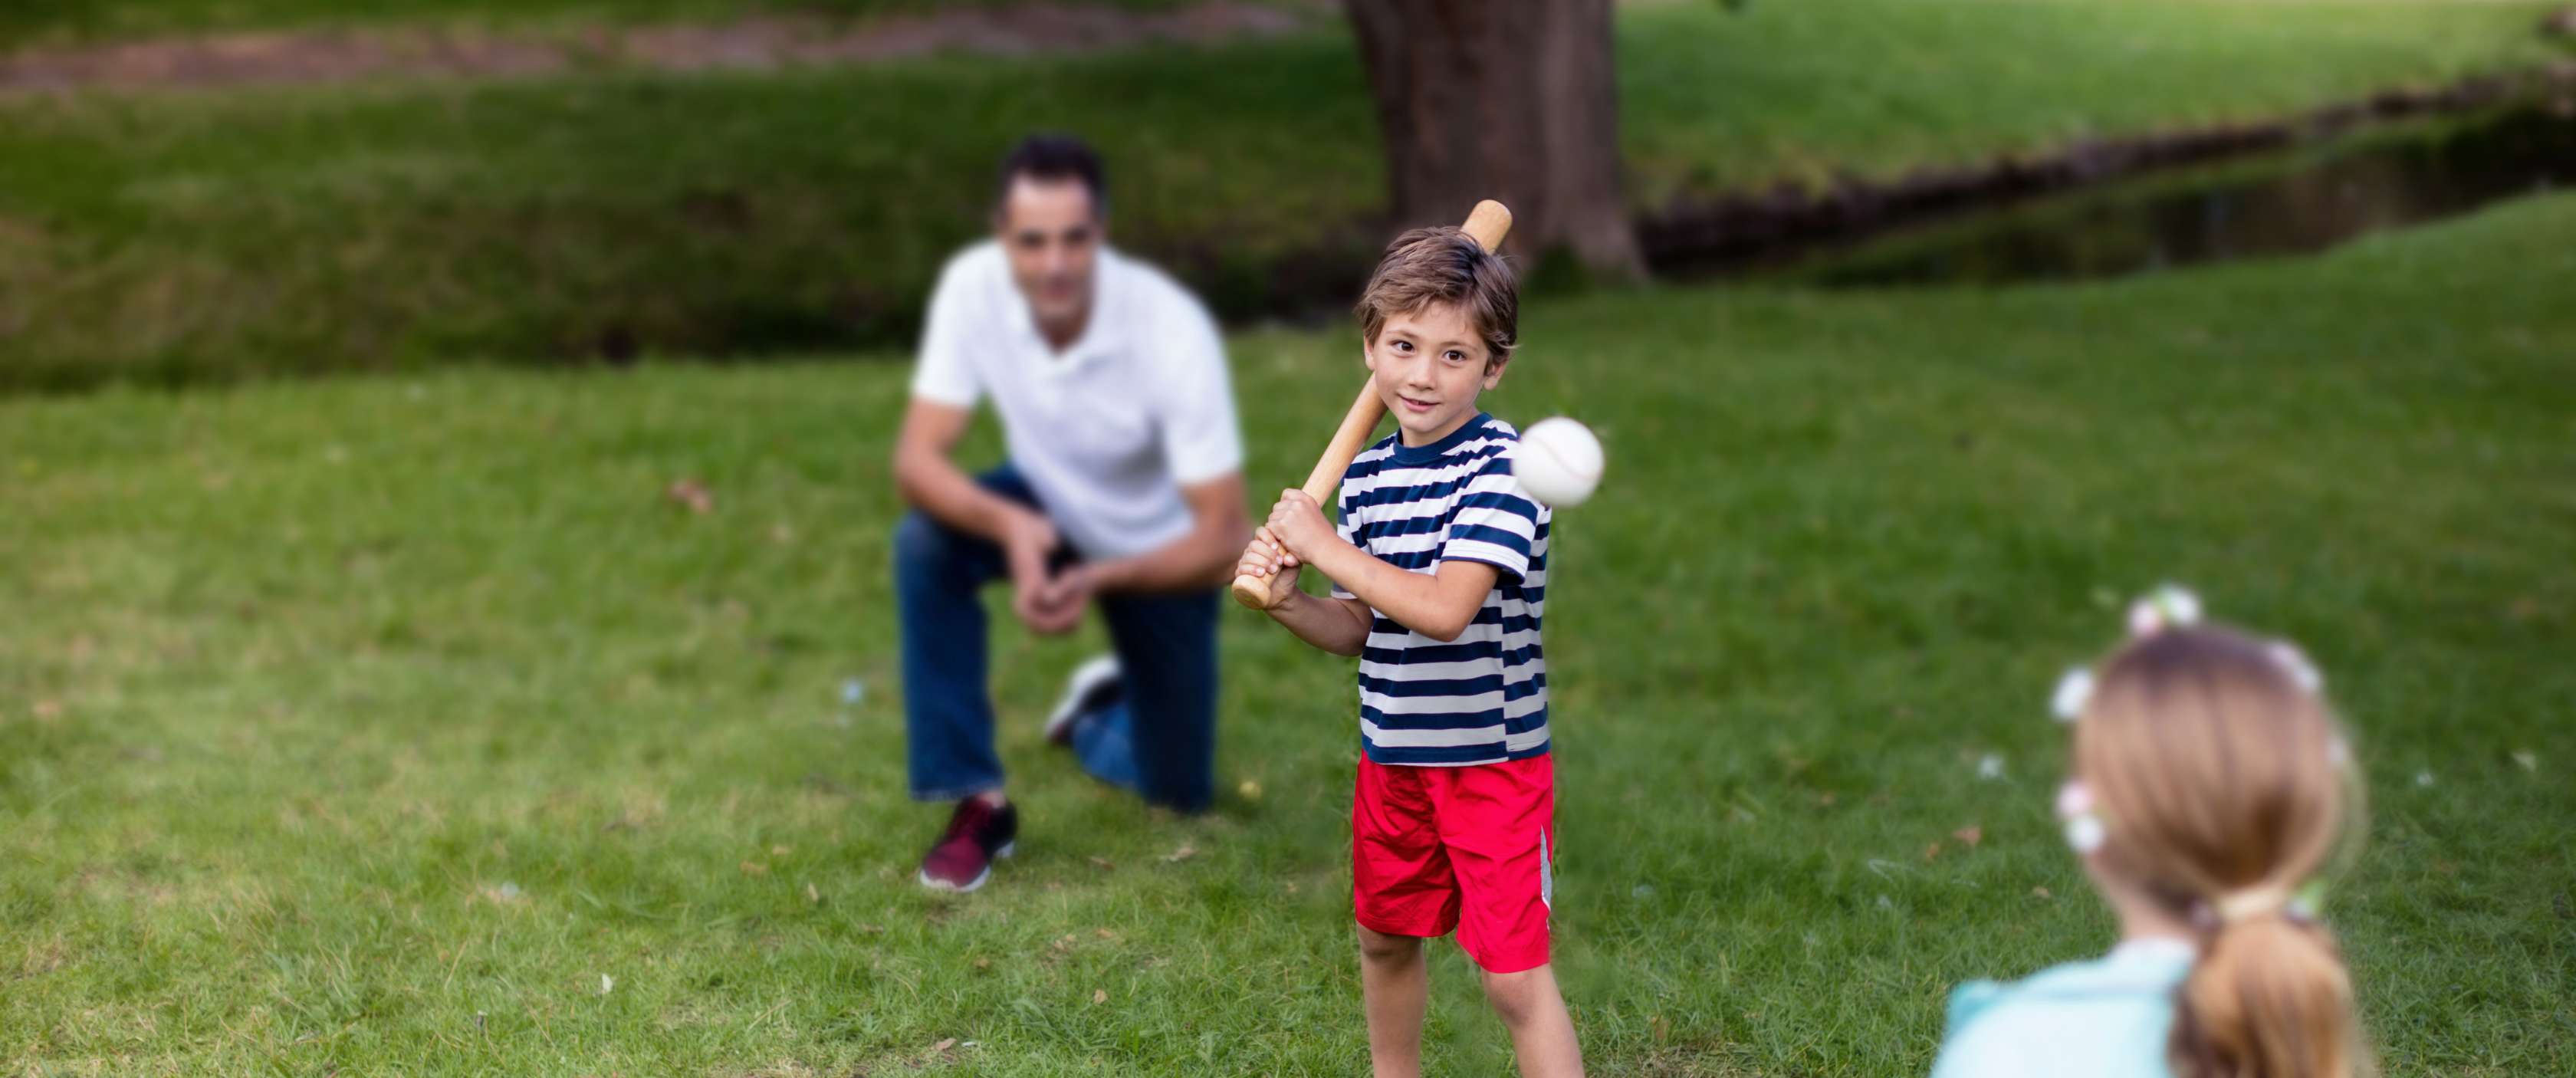 Familienversicherung: Kleiner Junge schlägt nach einem fliegenden Baseball, während der Vater als Fänger hinter ihm kniet